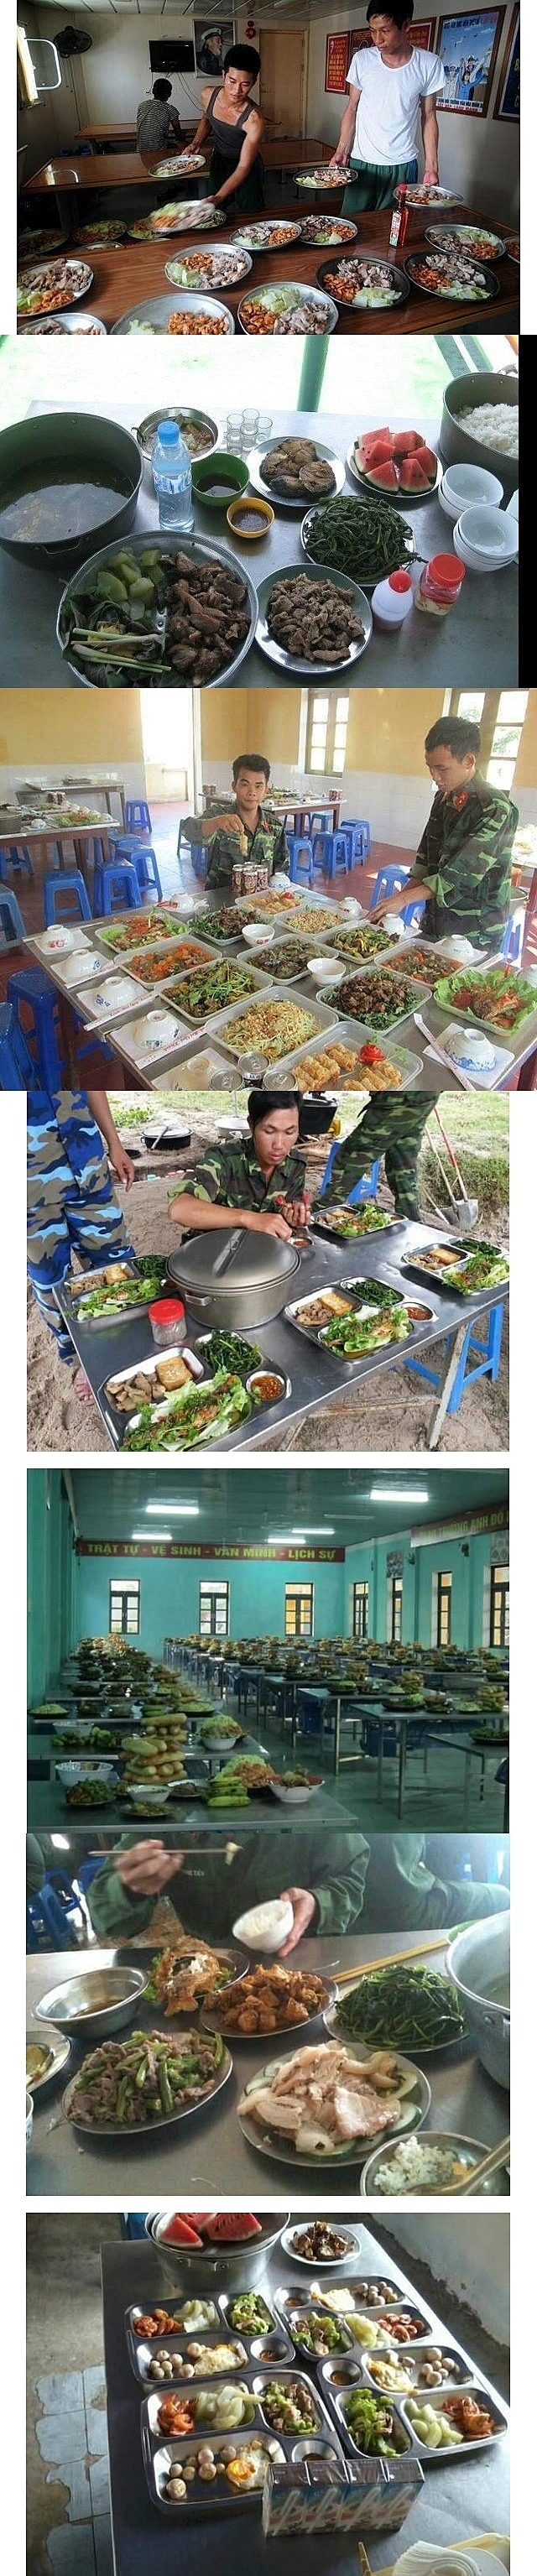 베트남 군대 식단 근황